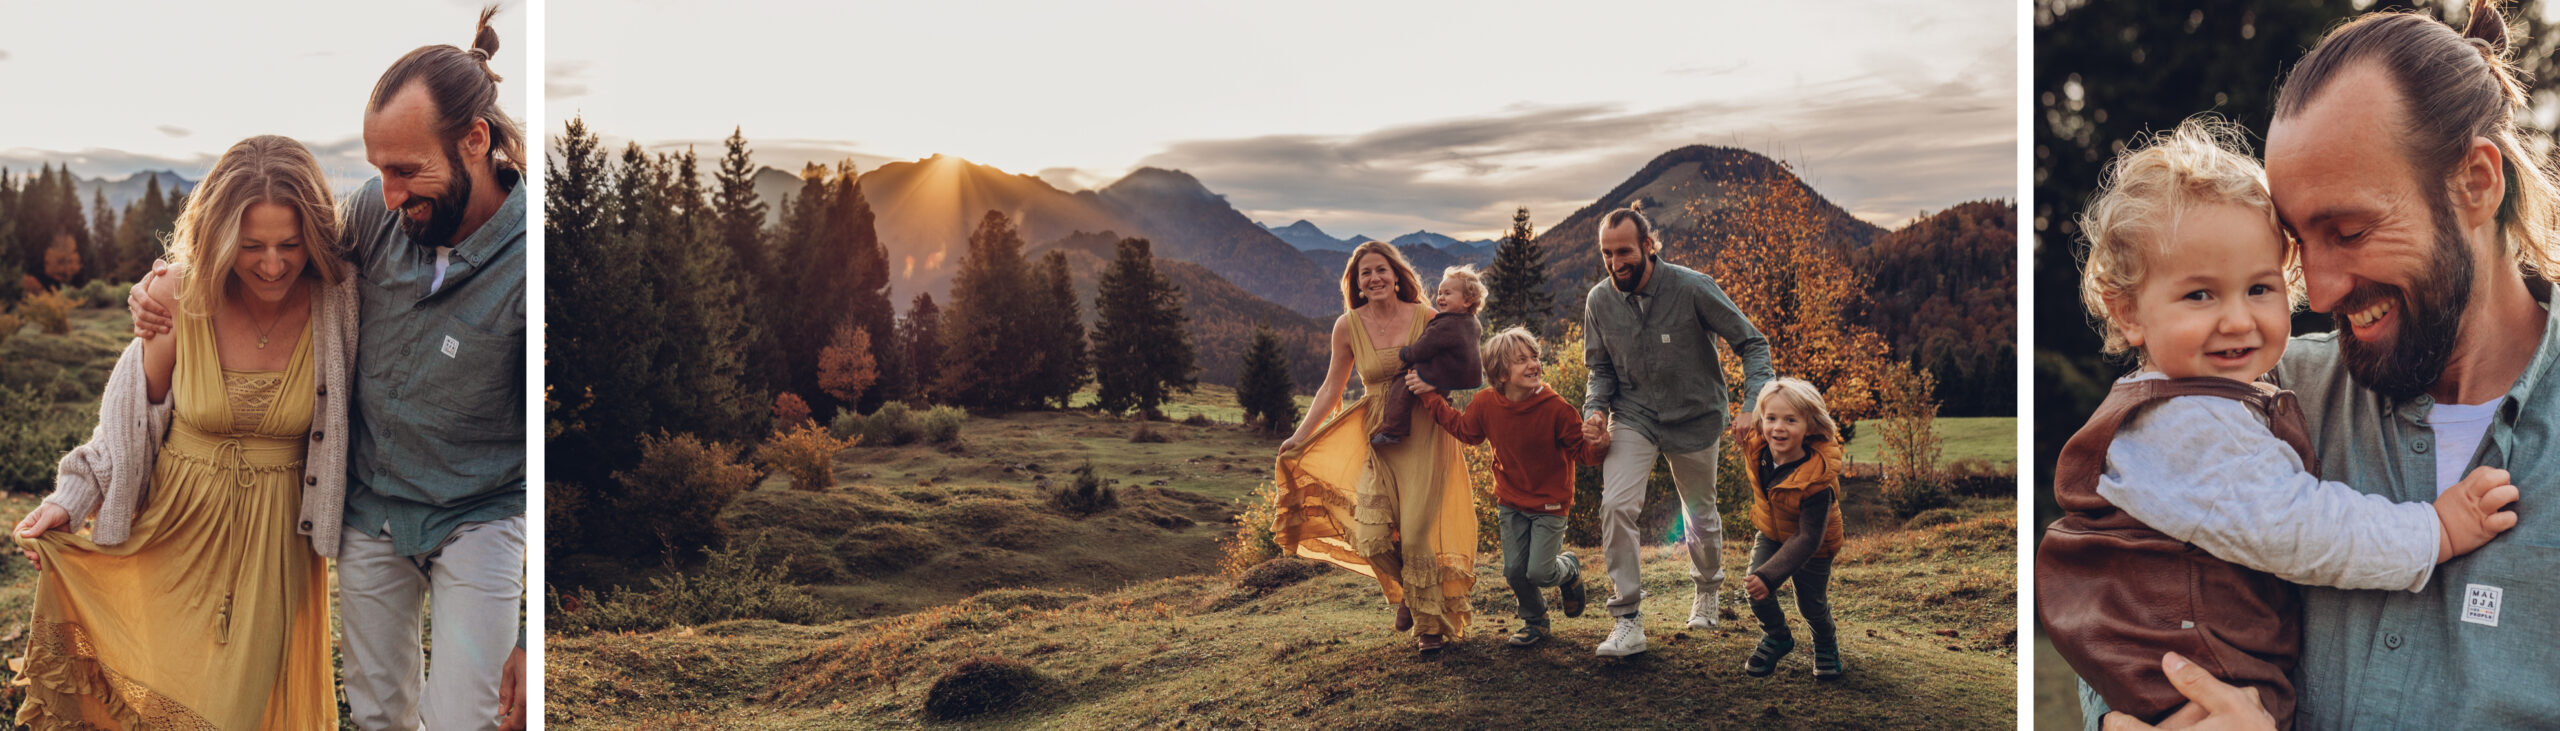 Familienbilder in den Bergen Alpen Chiemgau Rosenheim